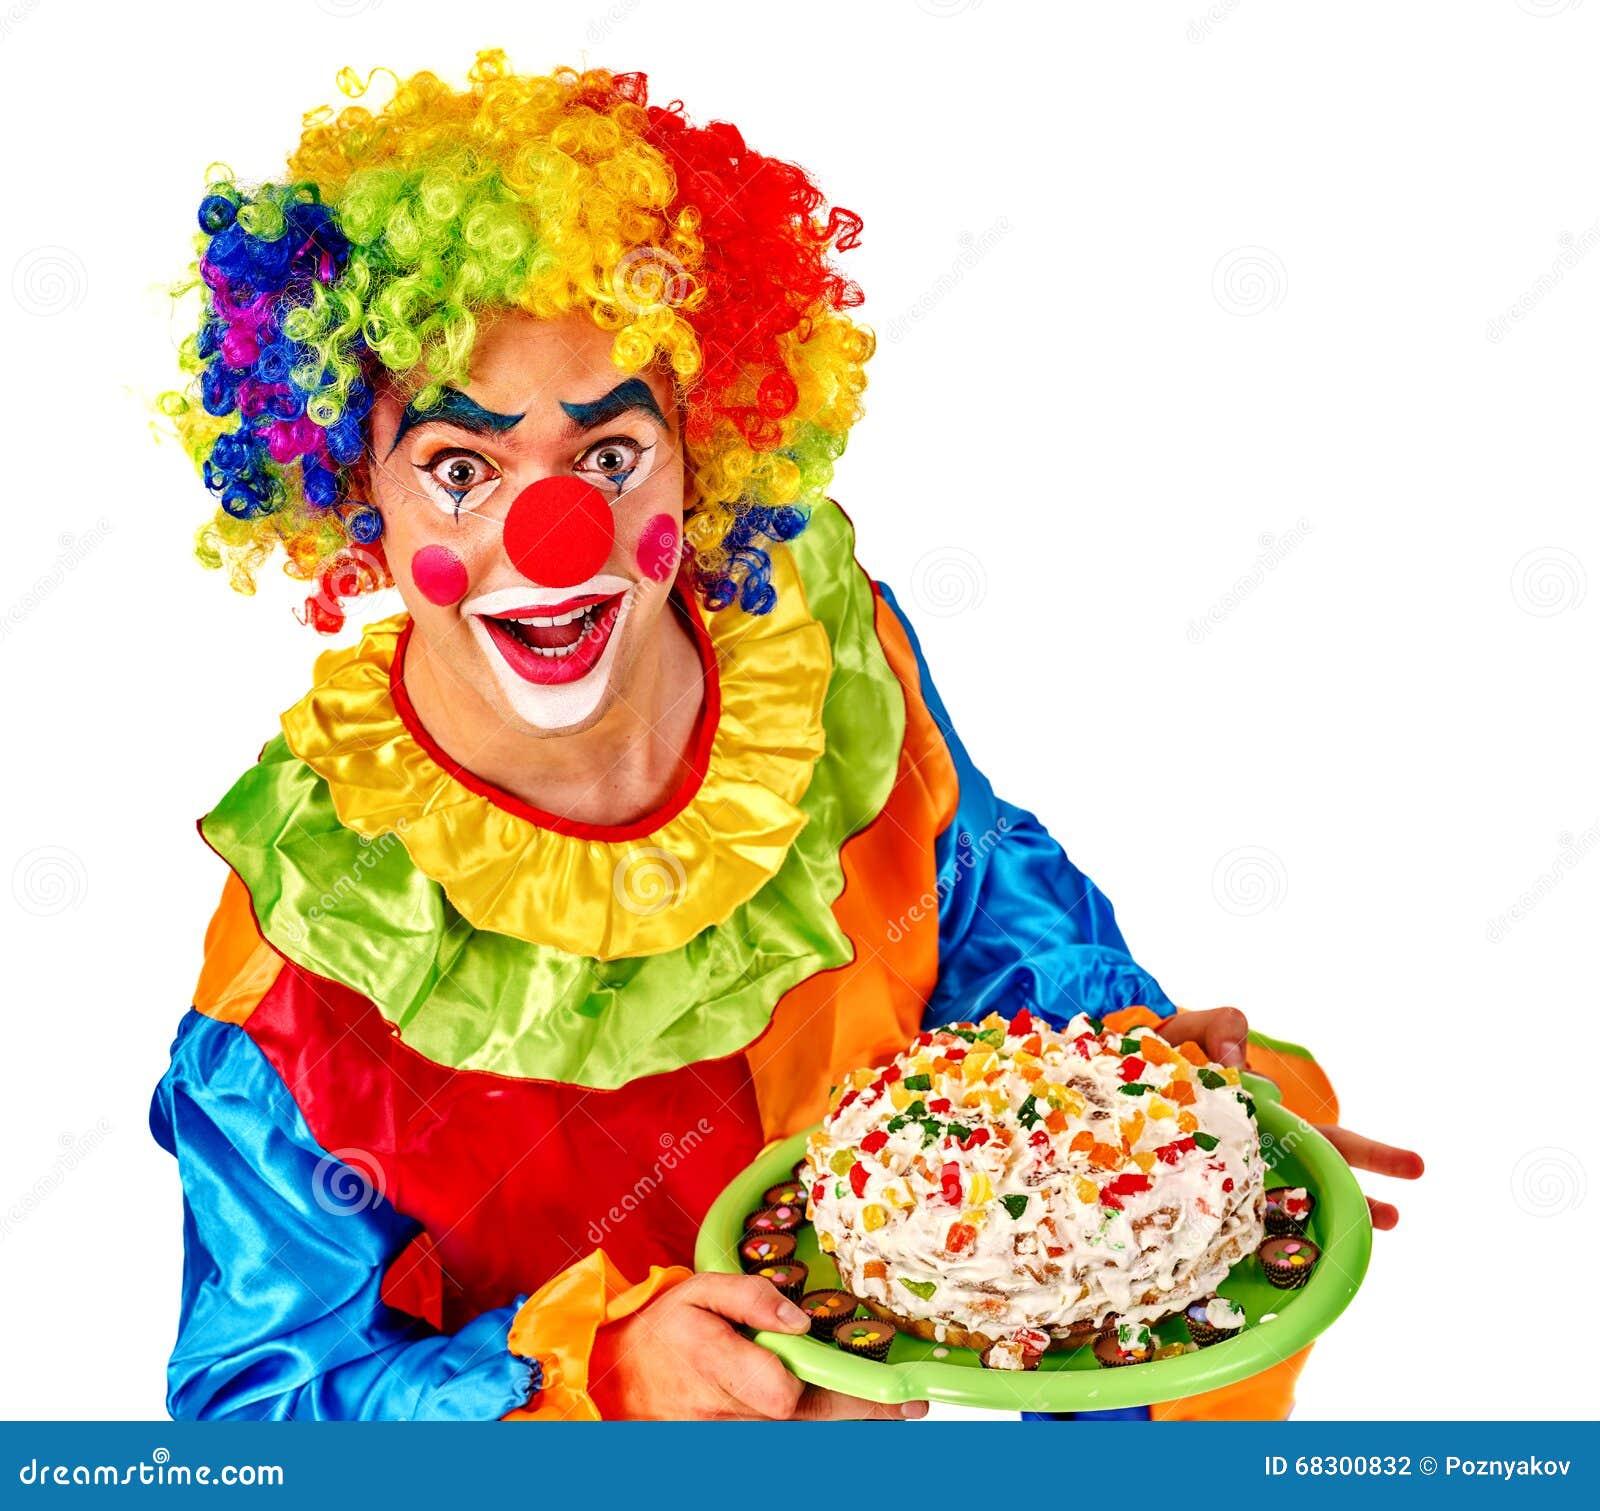 拿着蛋糕的生日快乐小丑 库存图片. 图片 包括有 生日, 懒散, 庆祝, 愉快, 五颜六色, 演艺人员, 招待 - 61743999